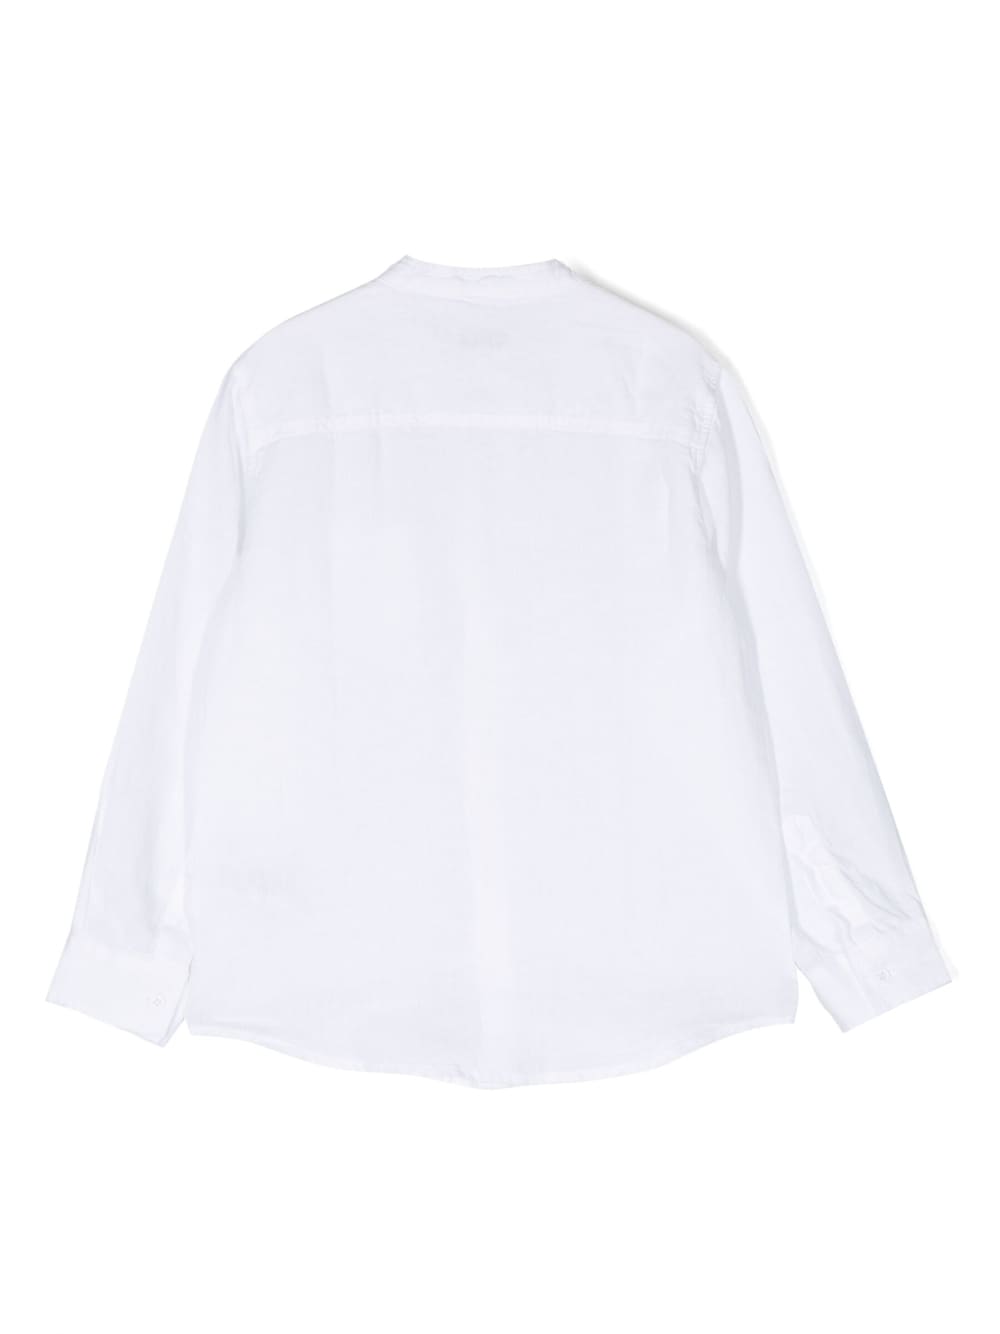 White linen shirt for boys